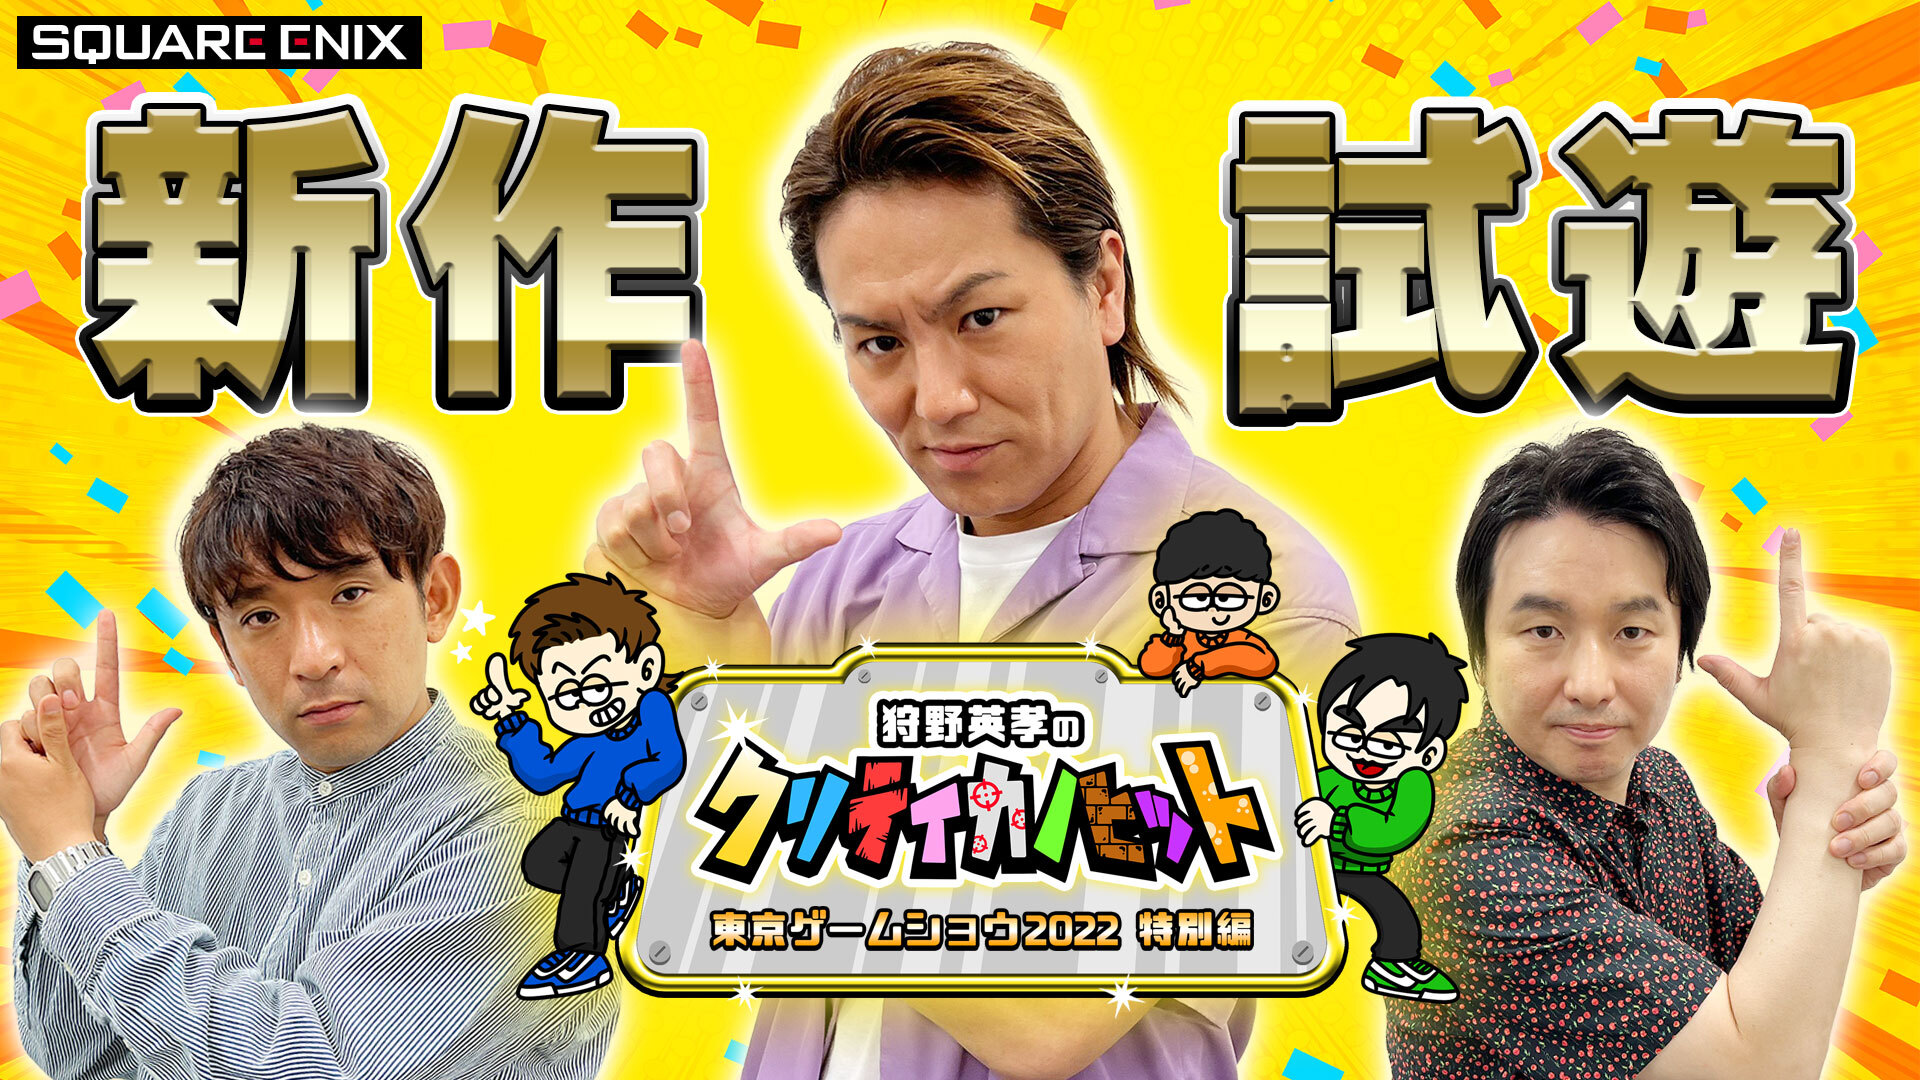 SQUARE ENIX PRESENTS, “EIKO KANO’S CRITIKANO HIT: Tokyo Game Show 2022 Special Episode”